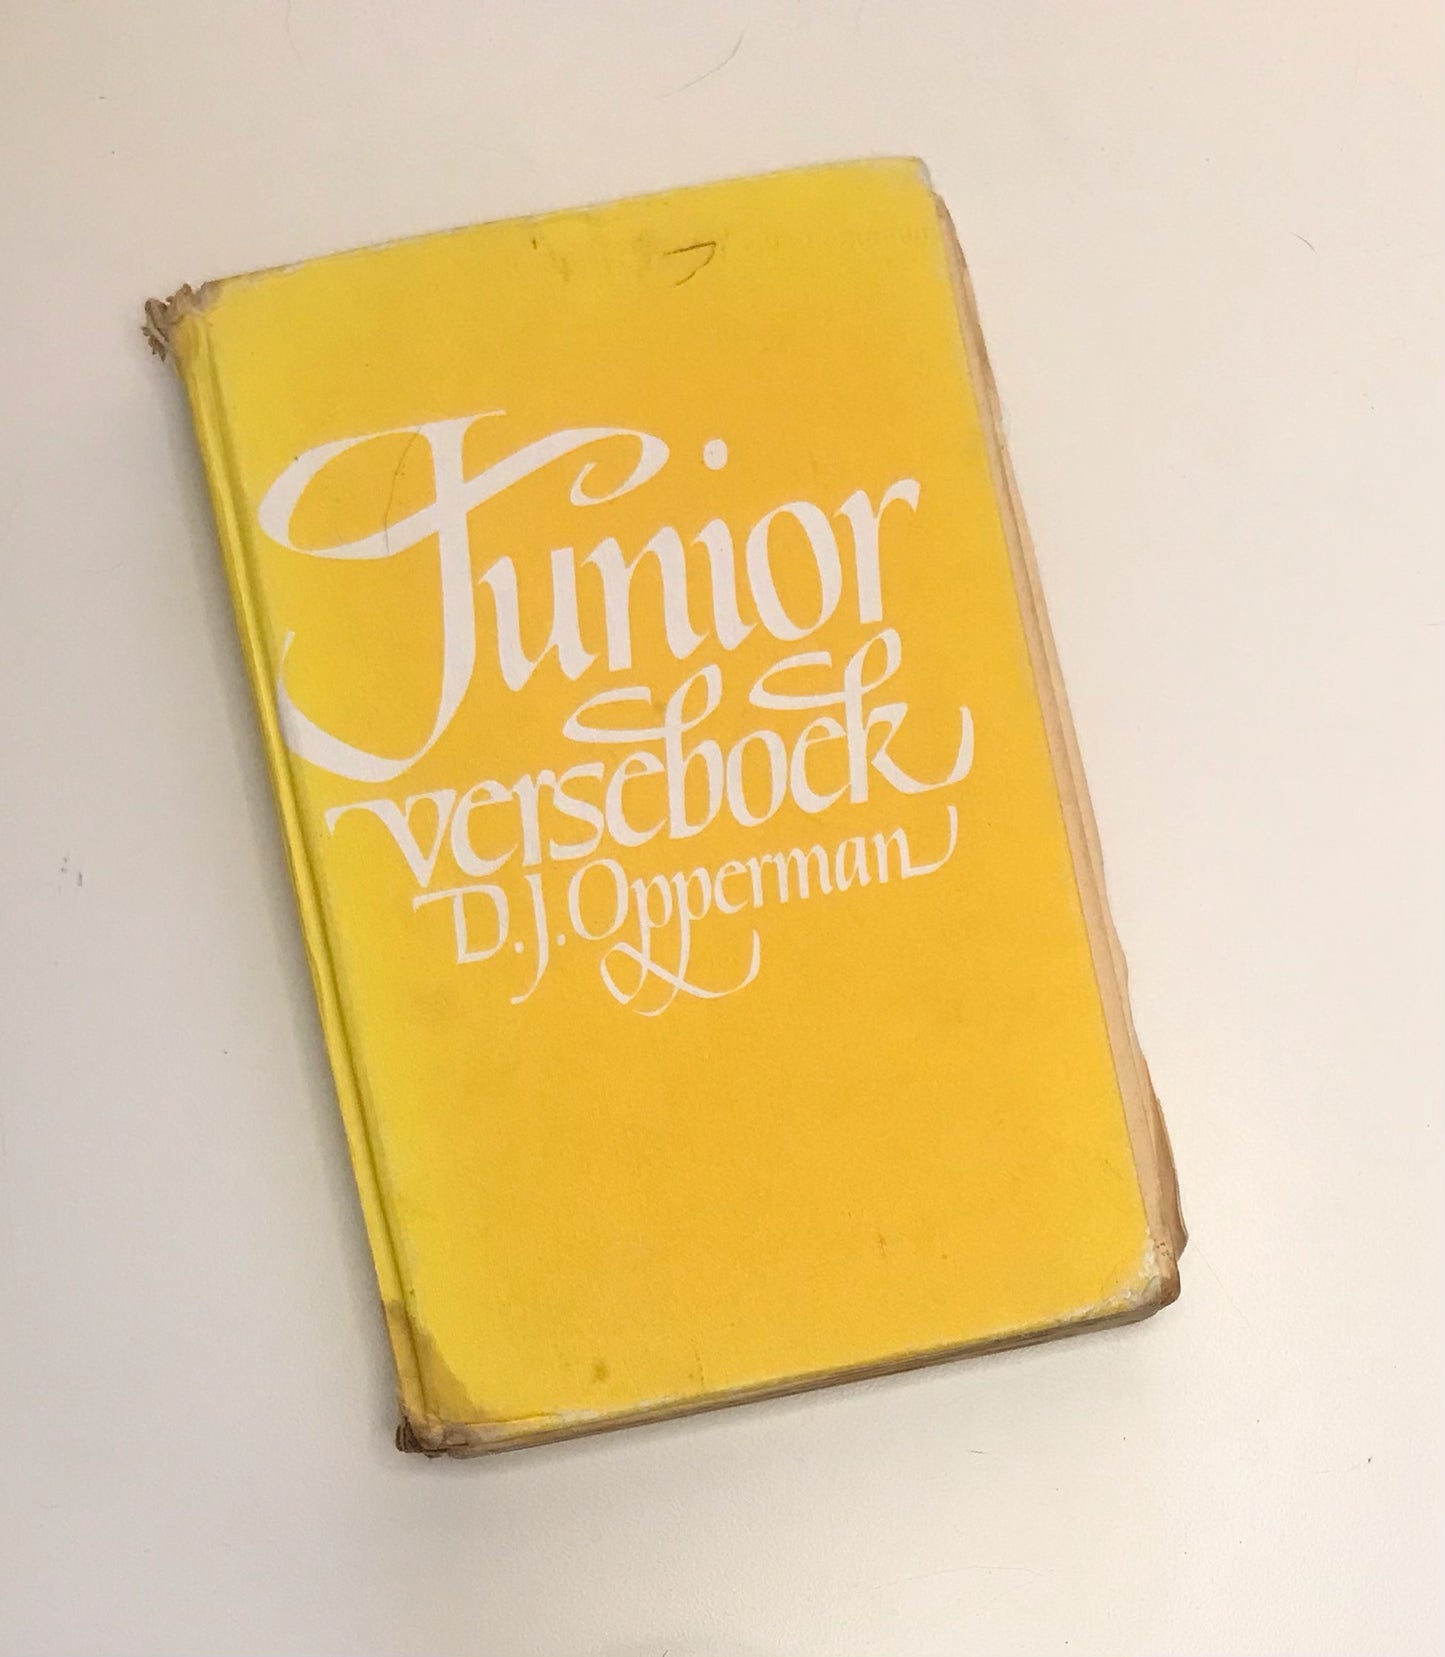 Junior verseboek - D.J. Opperman